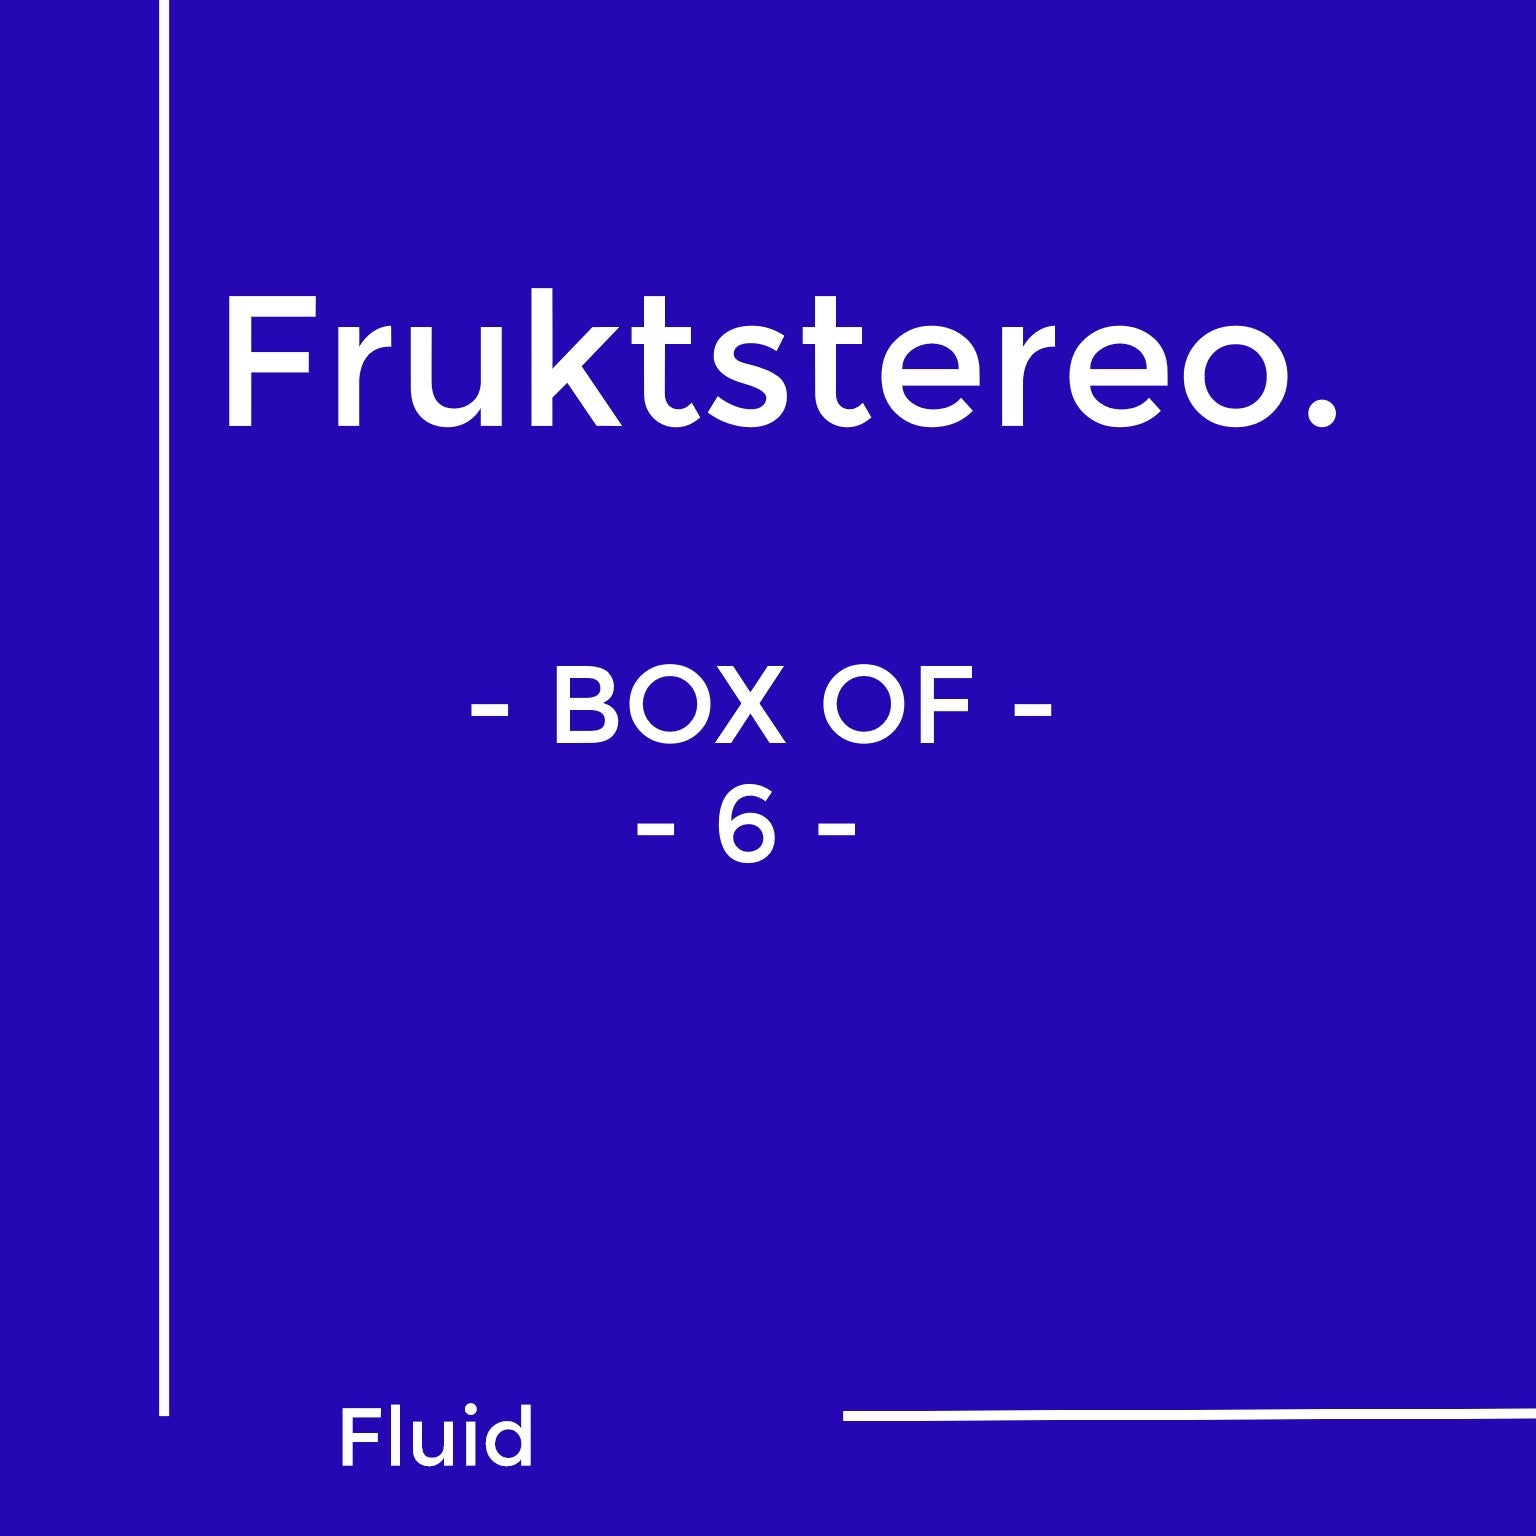 Frukstereo / Cider & Fruit Pét Nat / Fluid /Natural Cider / Onlie Shop